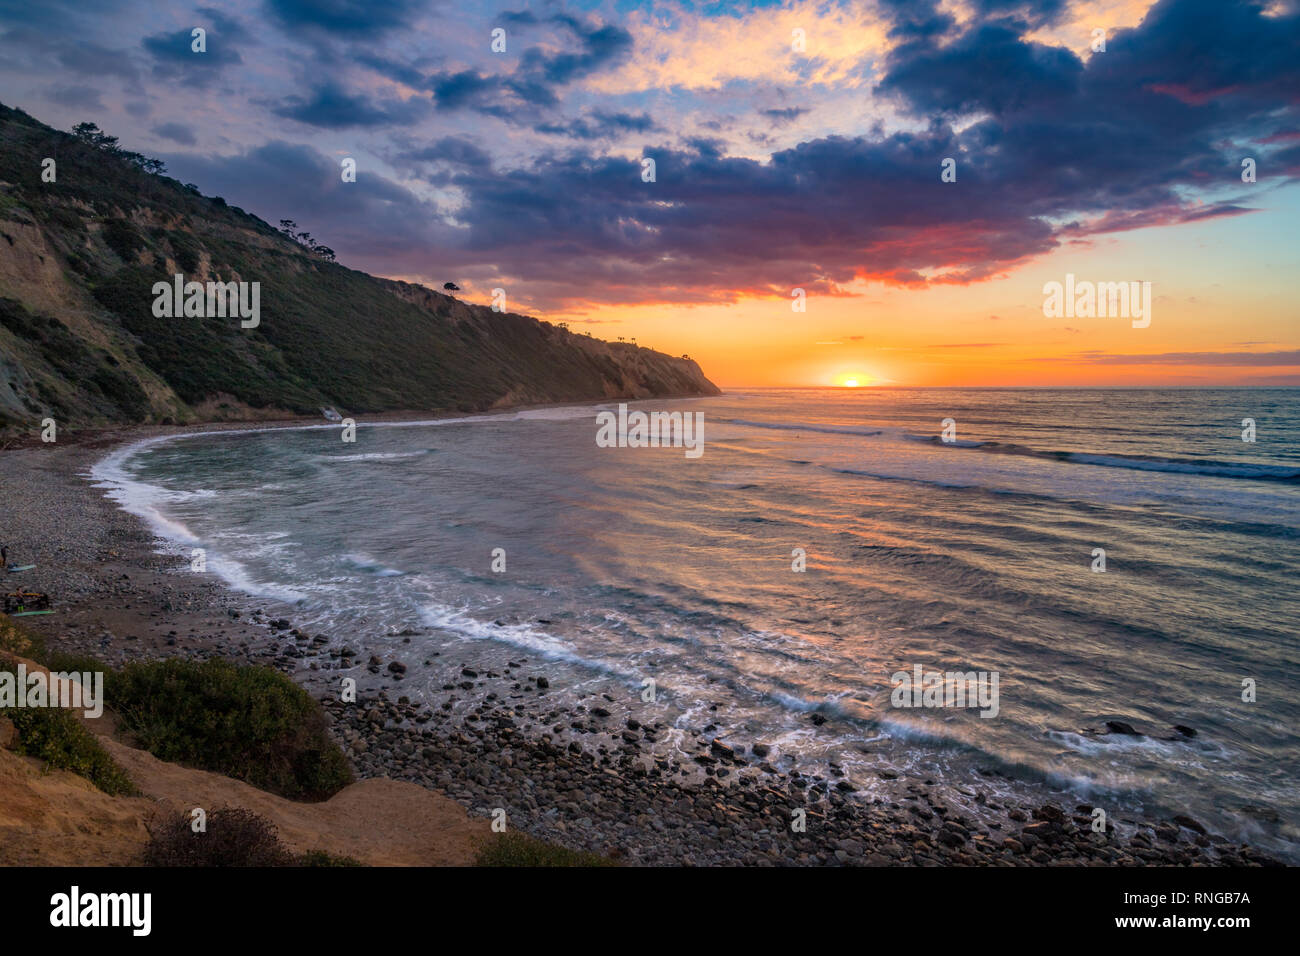 Un panorama de la Californie du Sud côte au coucher de soleil avec des nuages dans le ciel, Bluff Cove, Palos Verdes Estates, Californie Banque D'Images